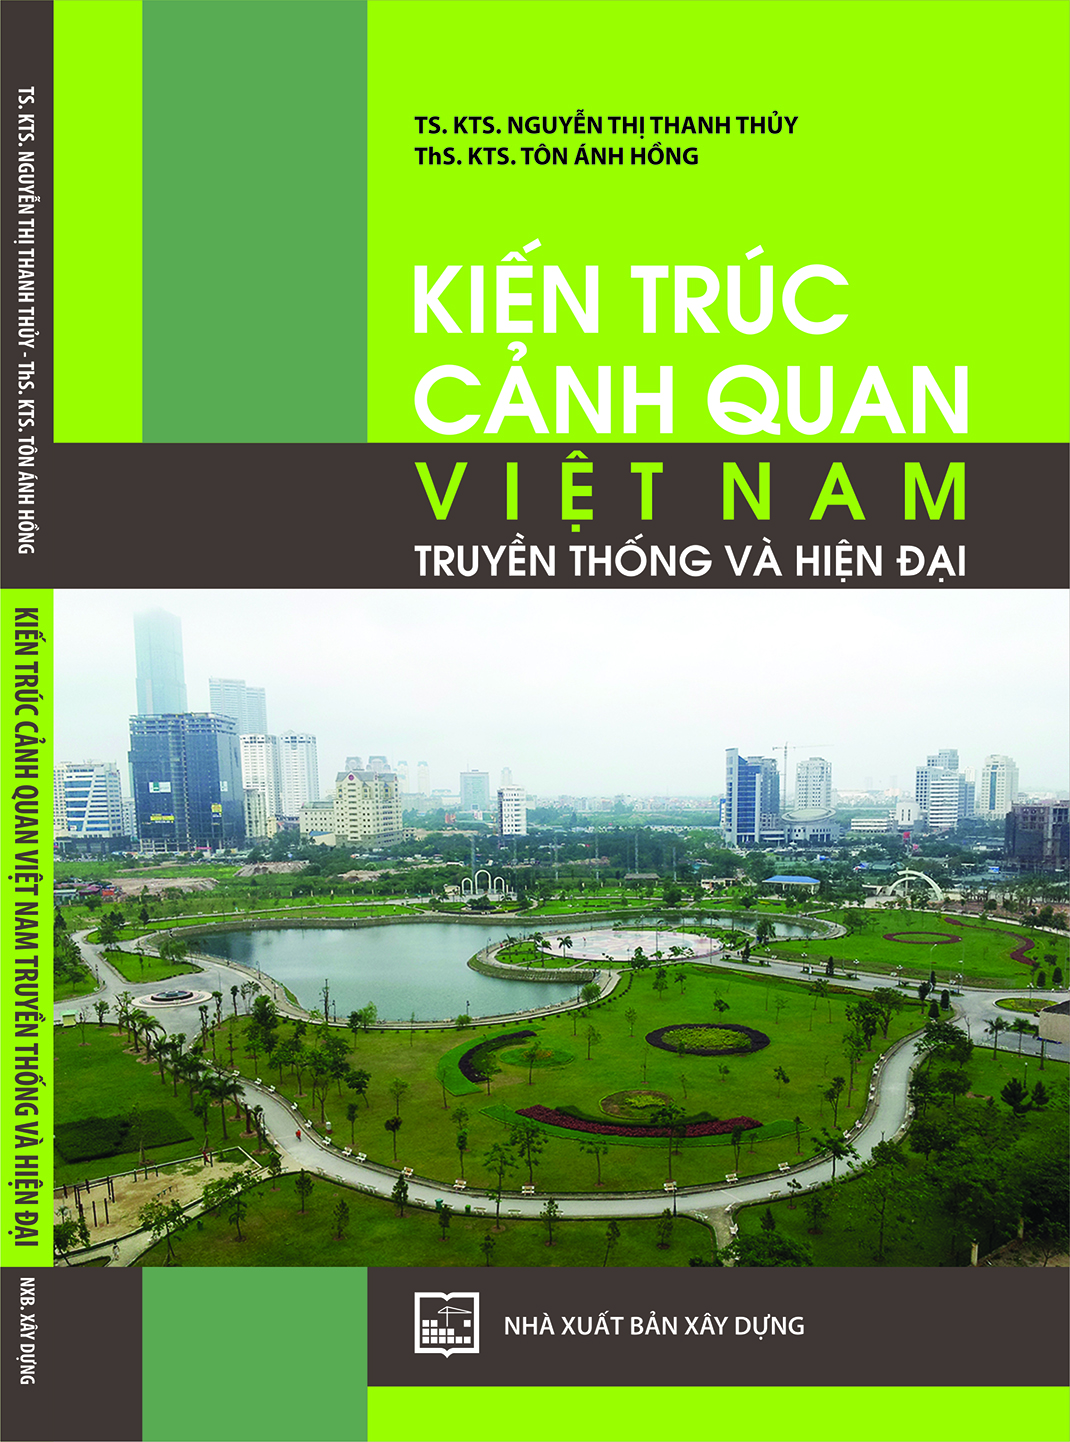 Kiến trúc cảnh quan Việt Nam truyền thống và hiện đại